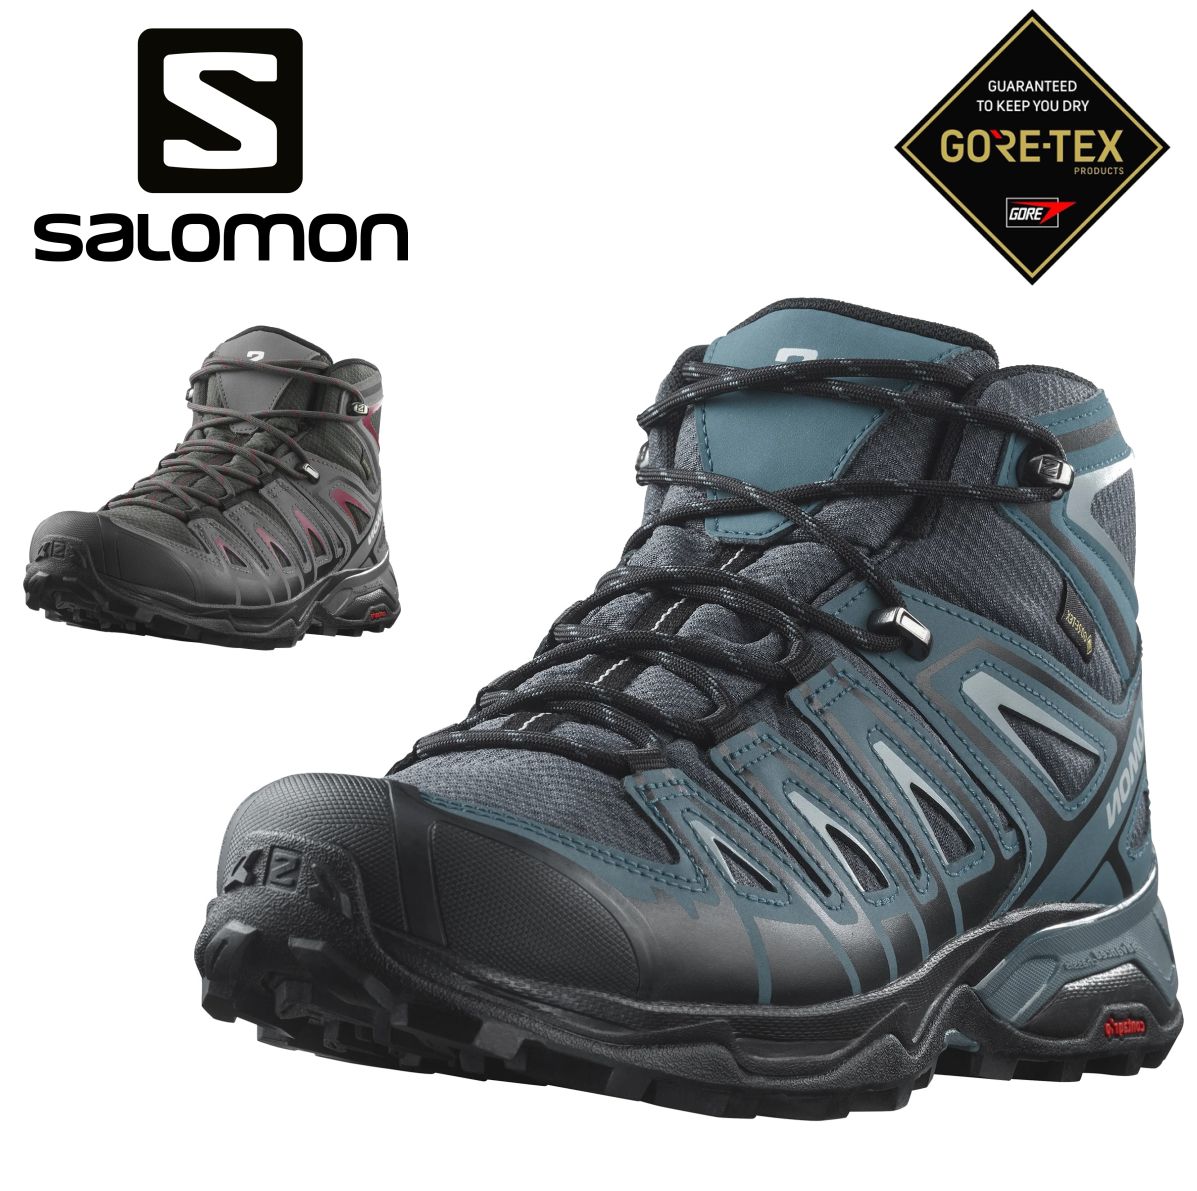 サロモン SALOMON メンズ ハイキング トレイル ランニング シューズ X 